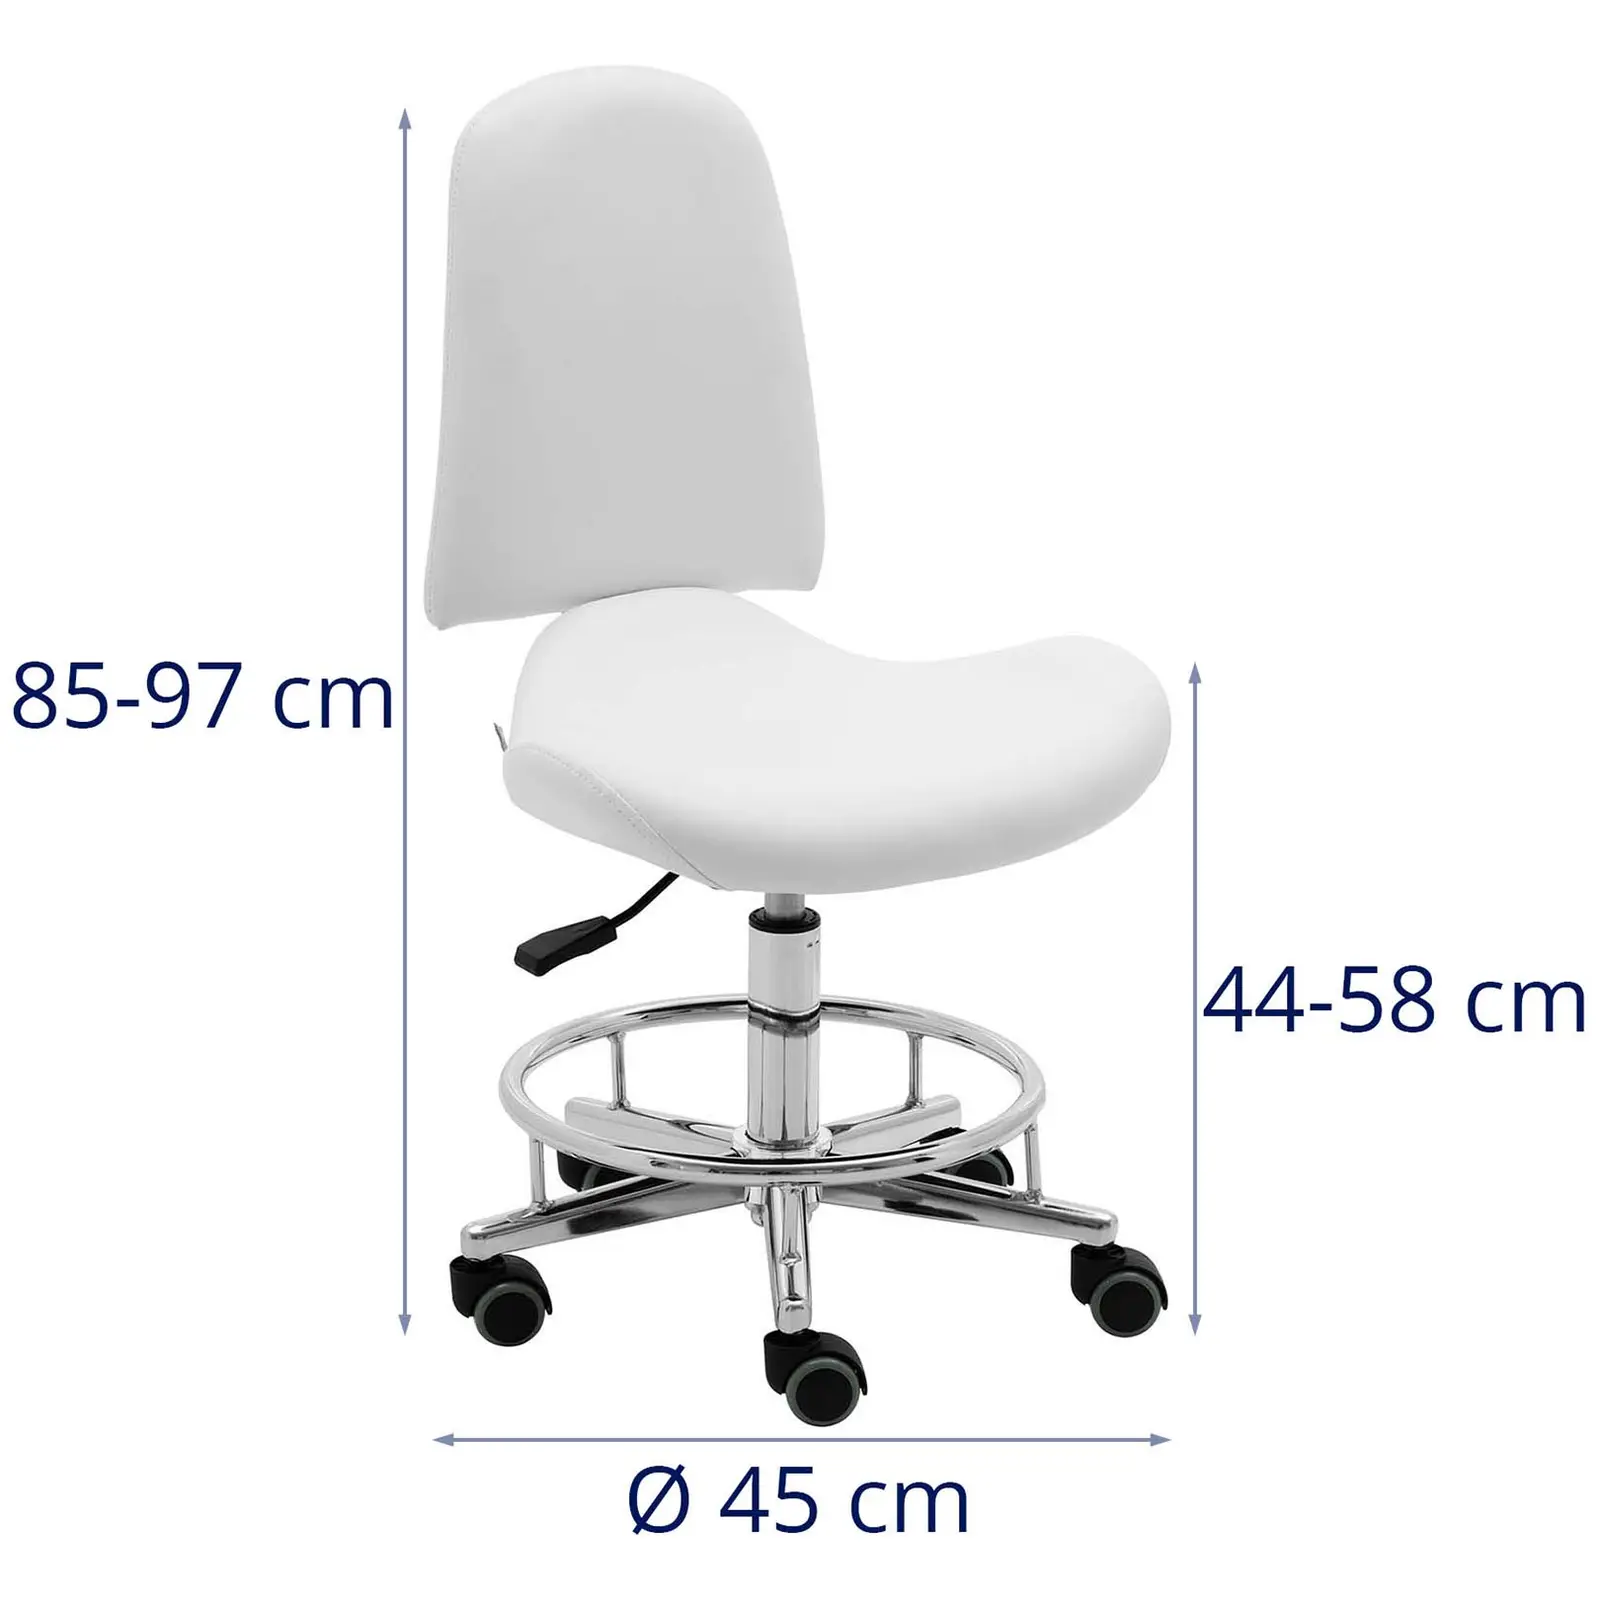 Cadeira para salão de beleza - 44 - 58 cm - 150 kg - branco